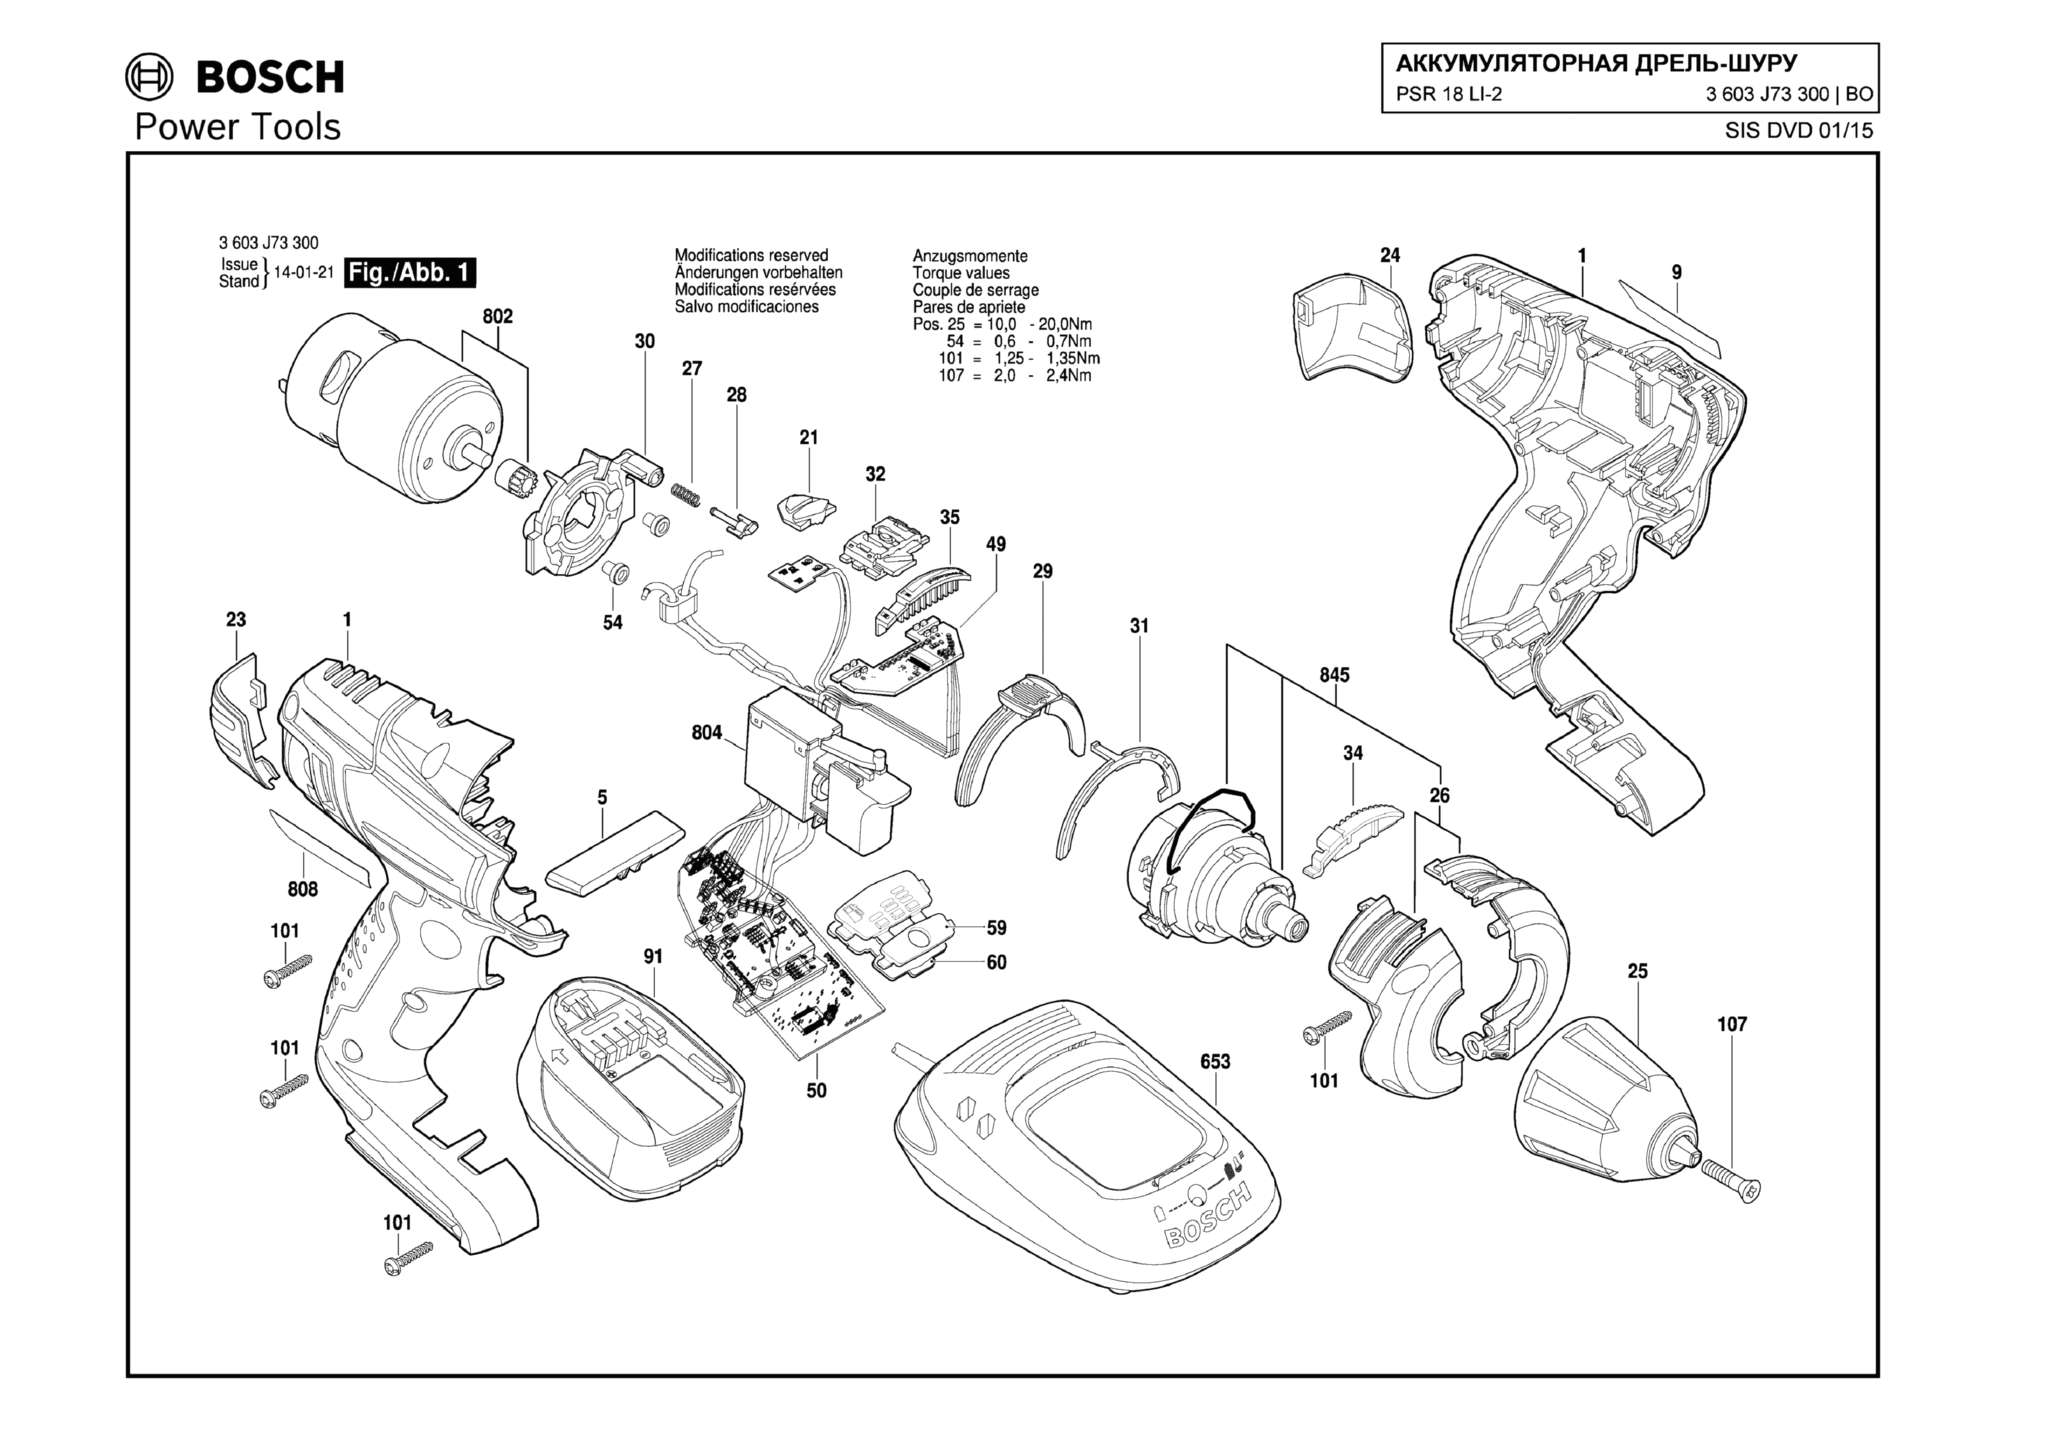 Запчасти, схема и деталировка Bosch PSR 18 LI-2 (ТИП 3603J73300)